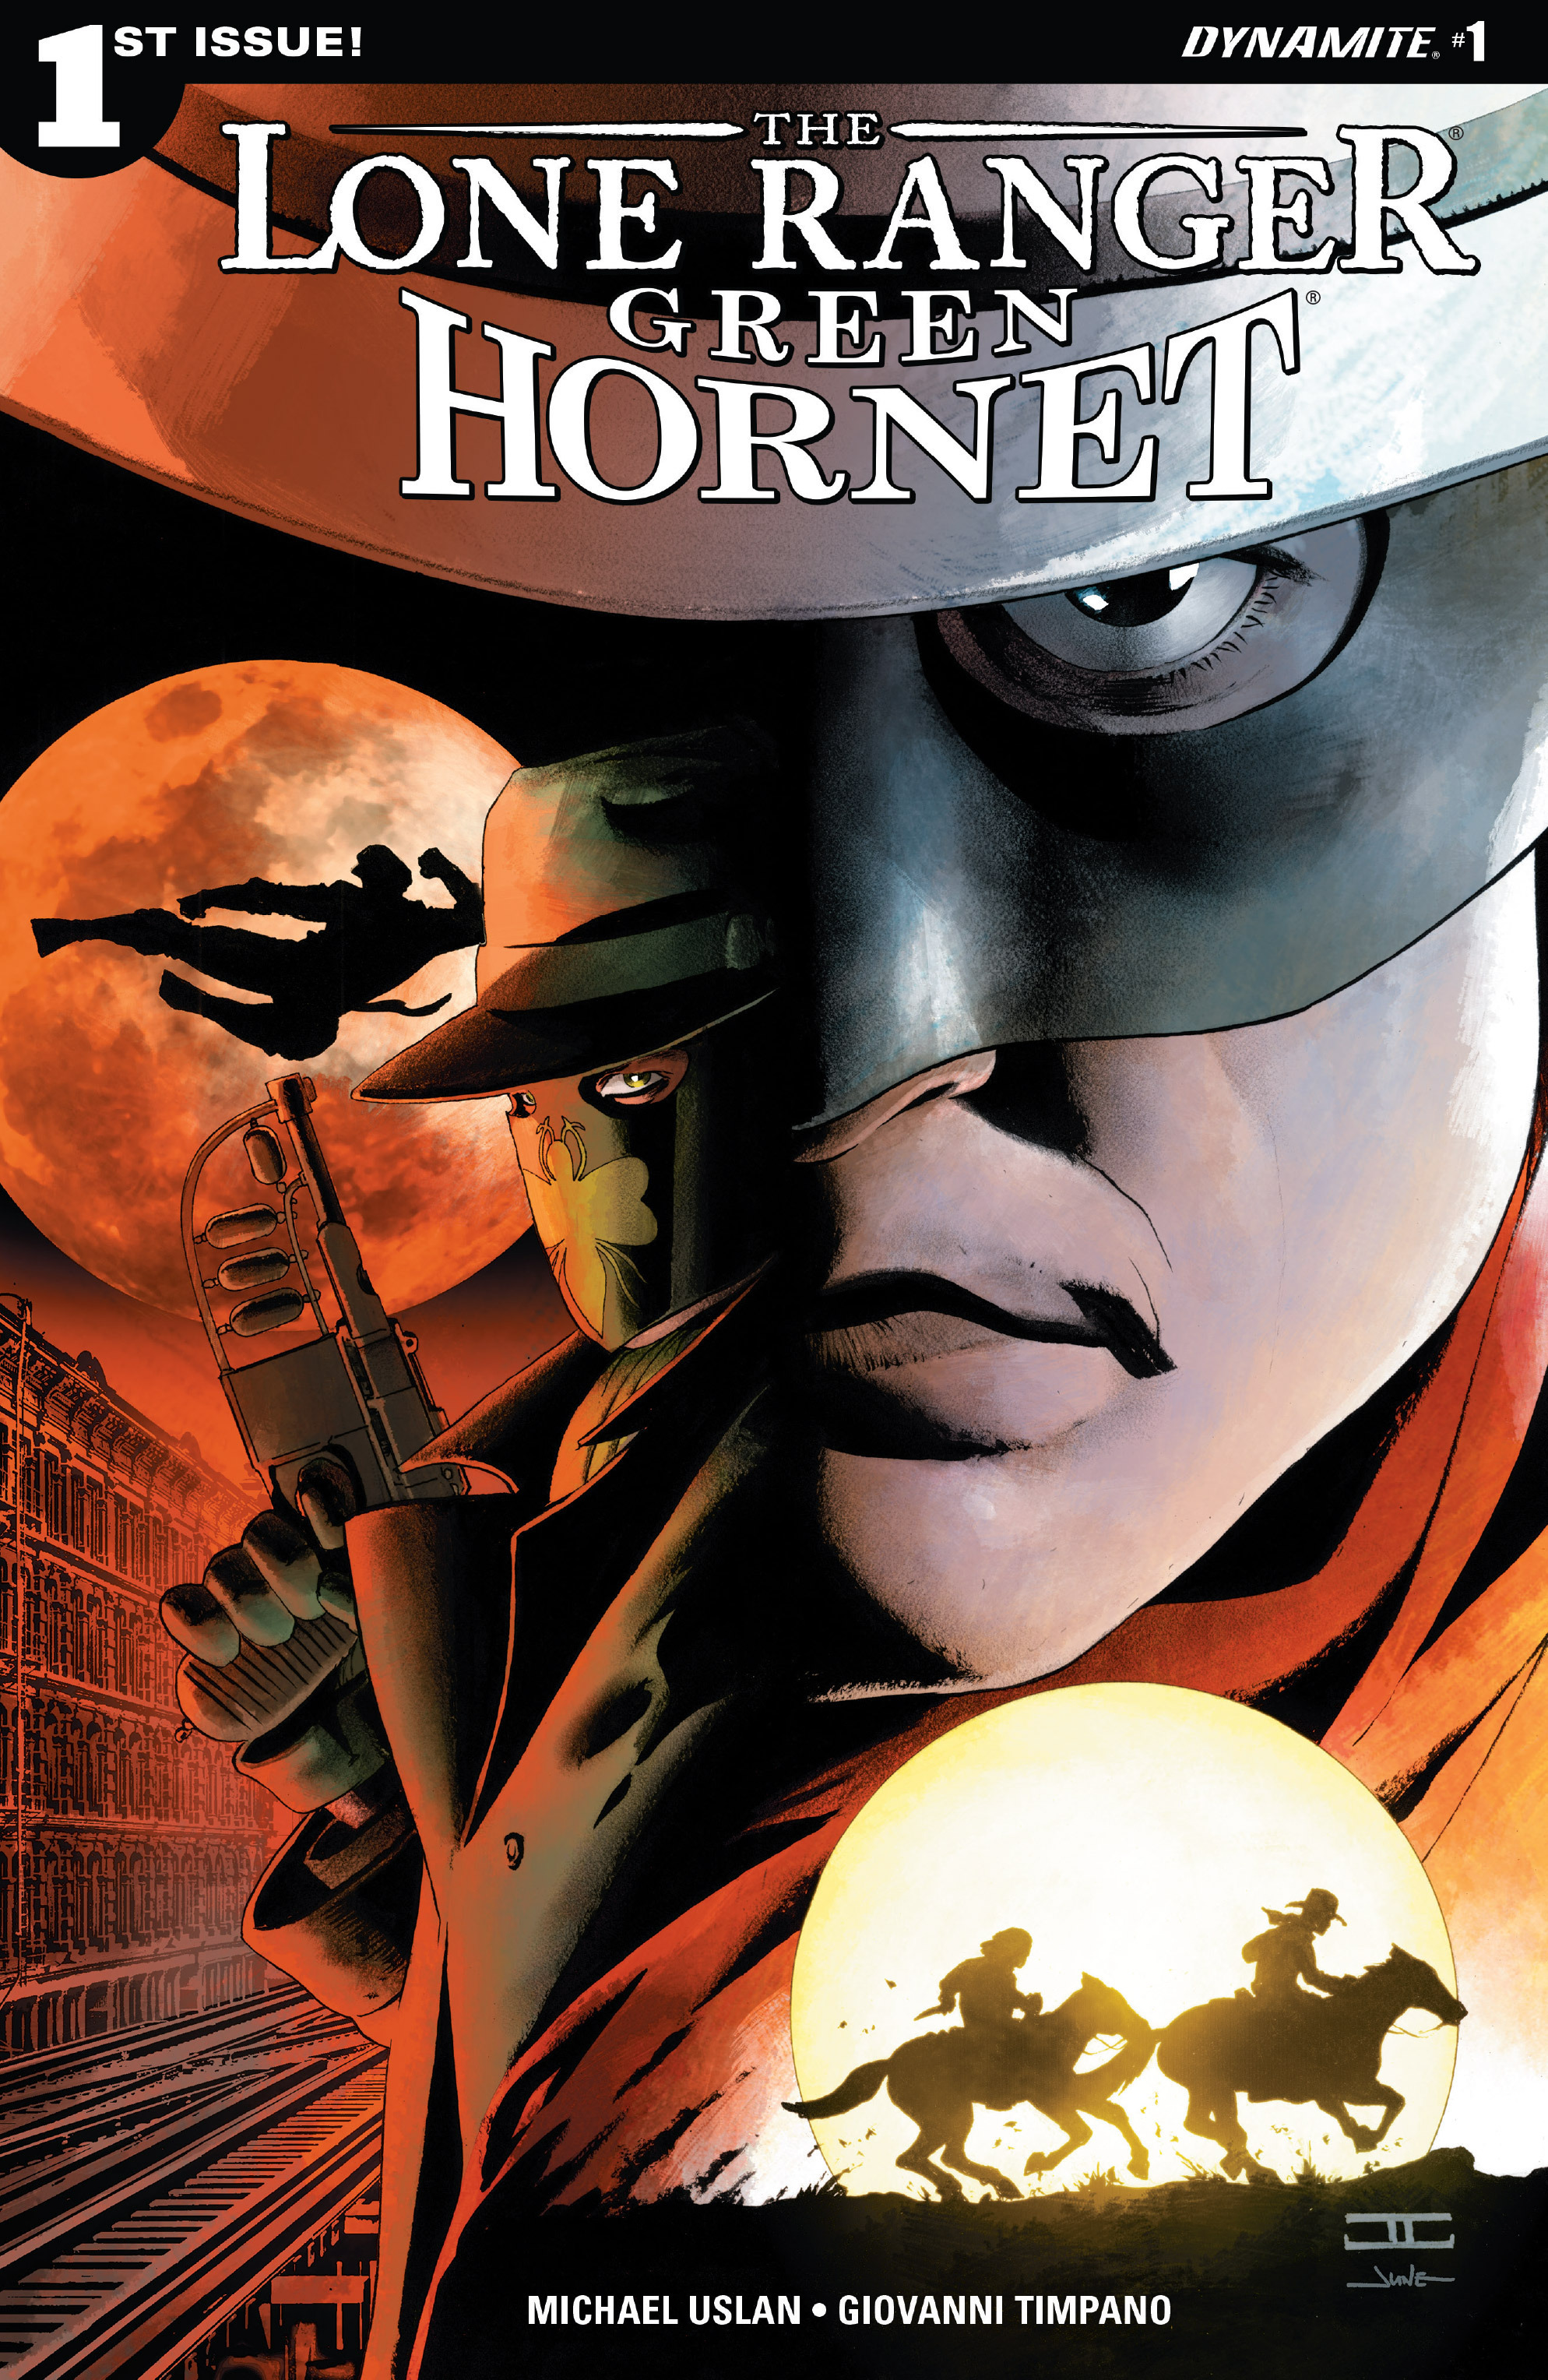 Read online The Lone Ranger/Green Hornet comic -  Issue #1 - 1